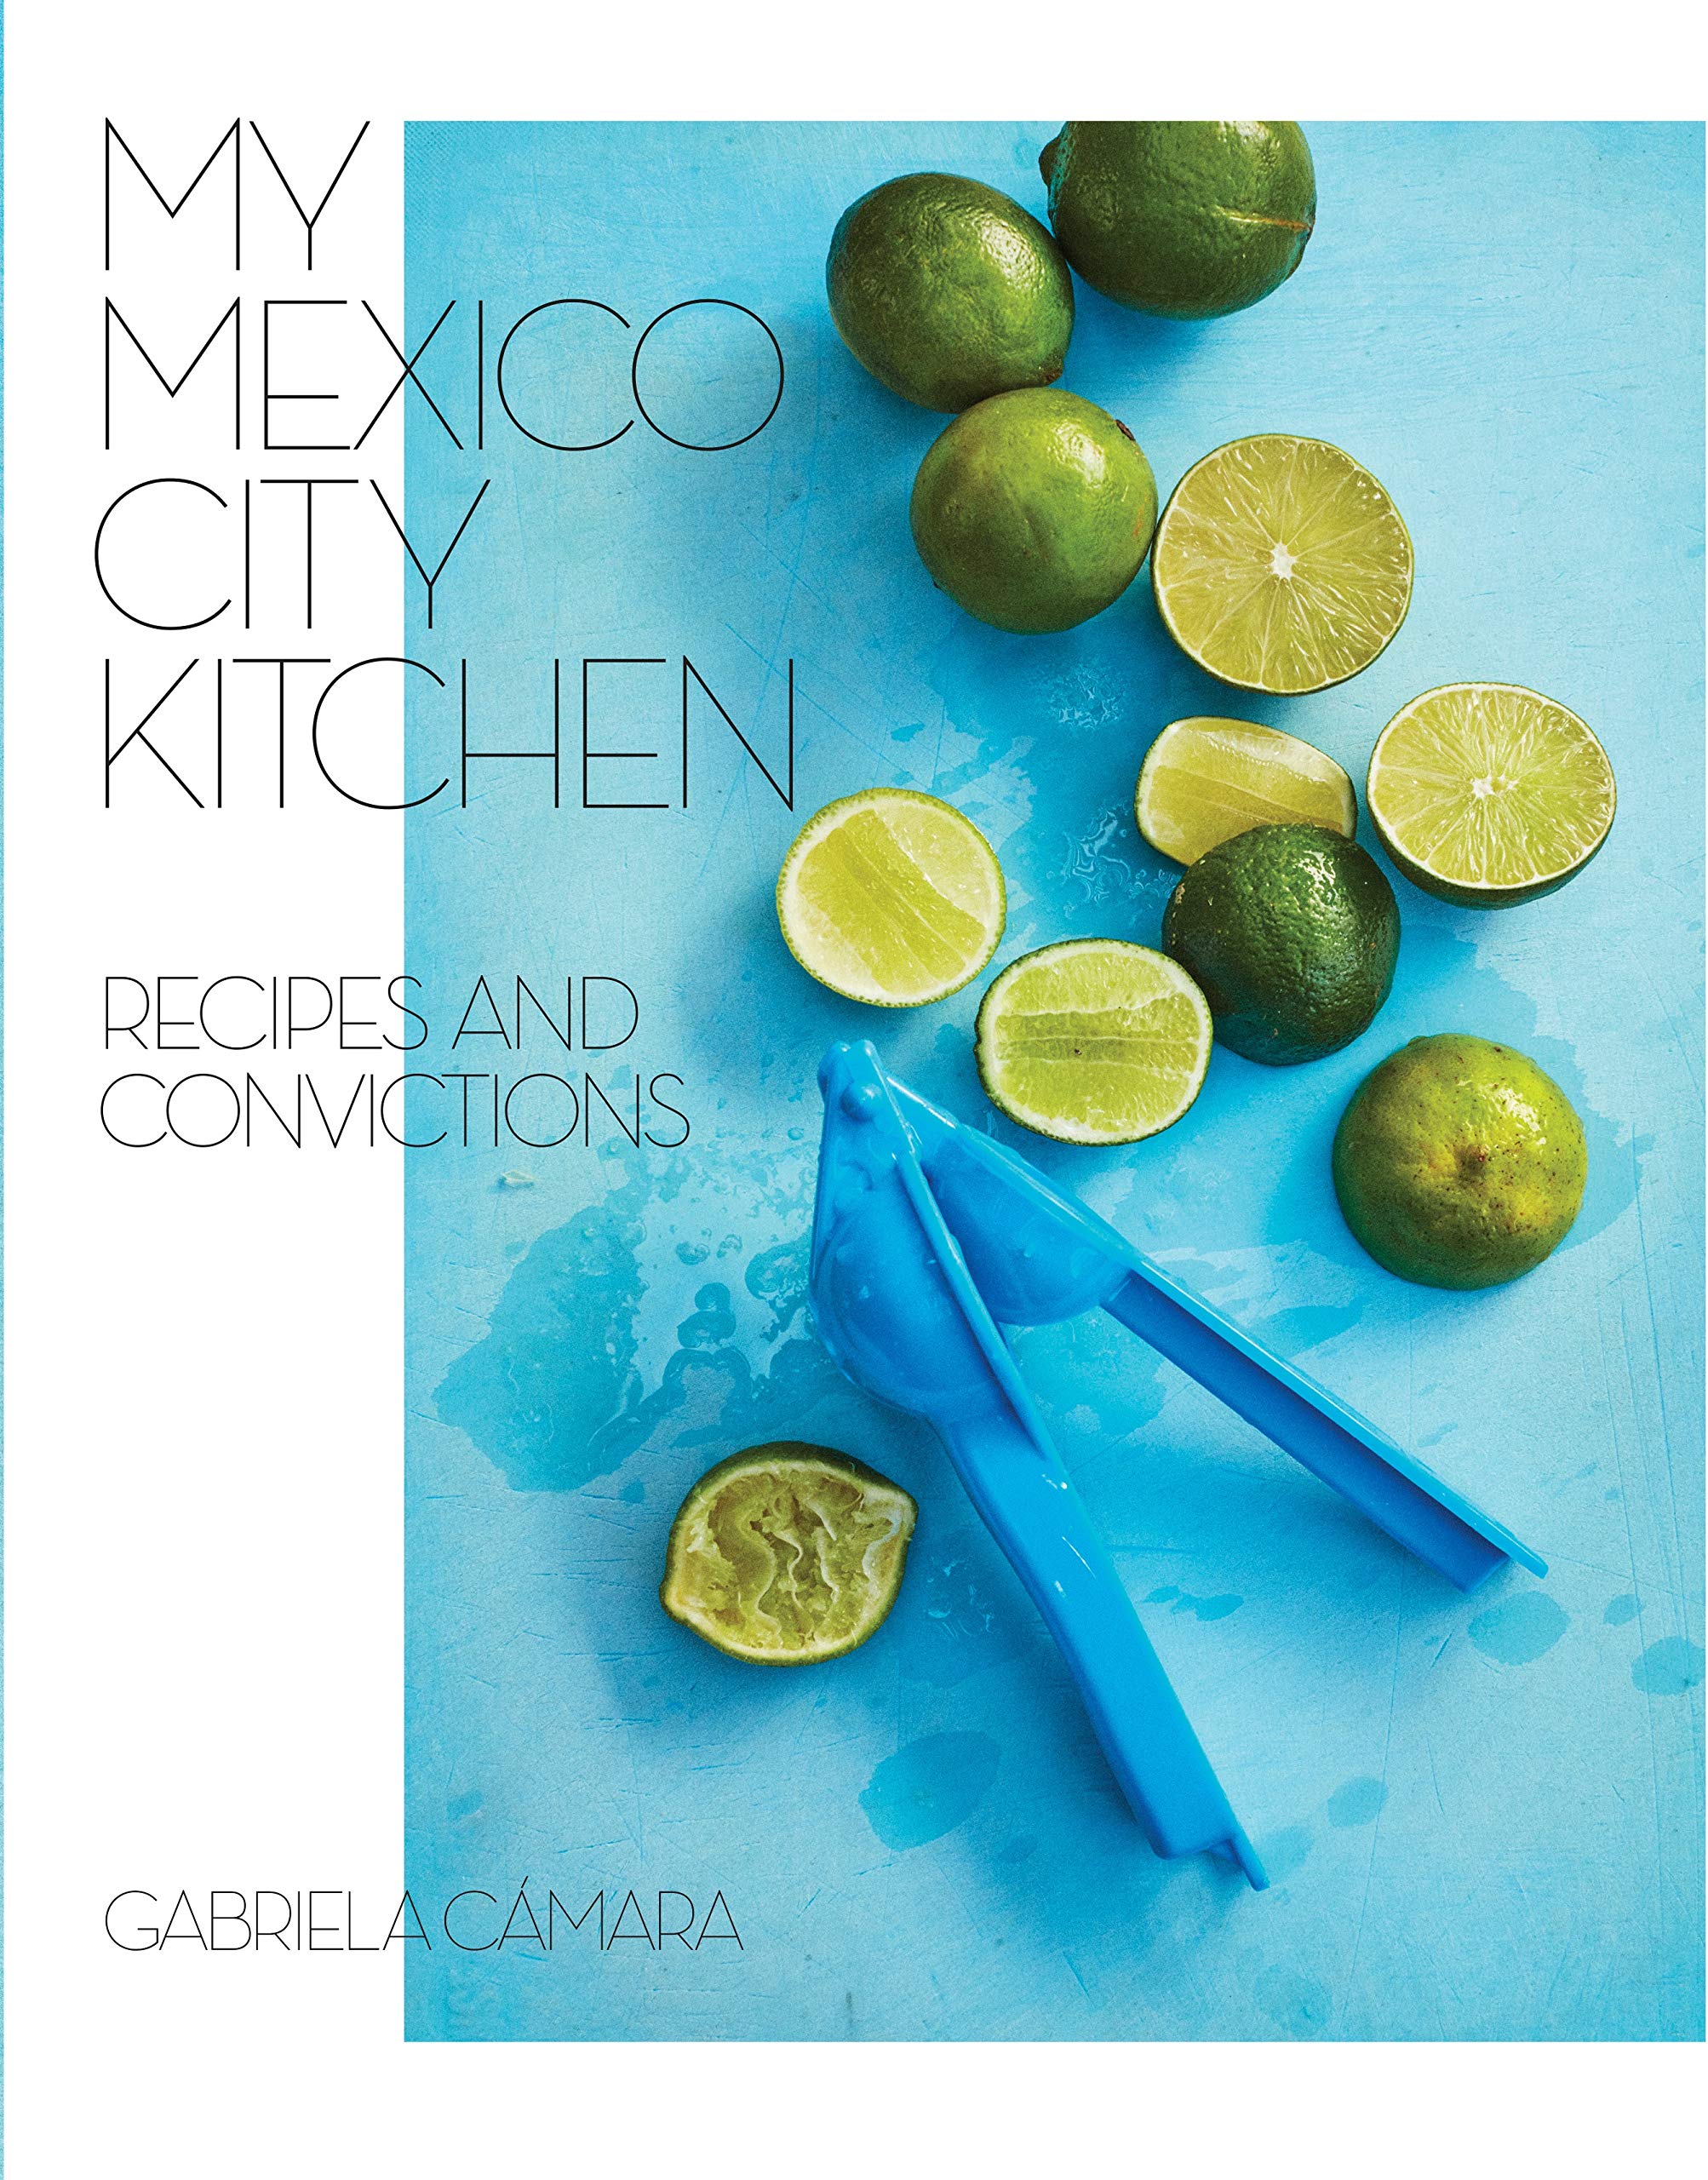 My Mexico City Kitchen: Recipes and Convictions (Gabriela Cámara)